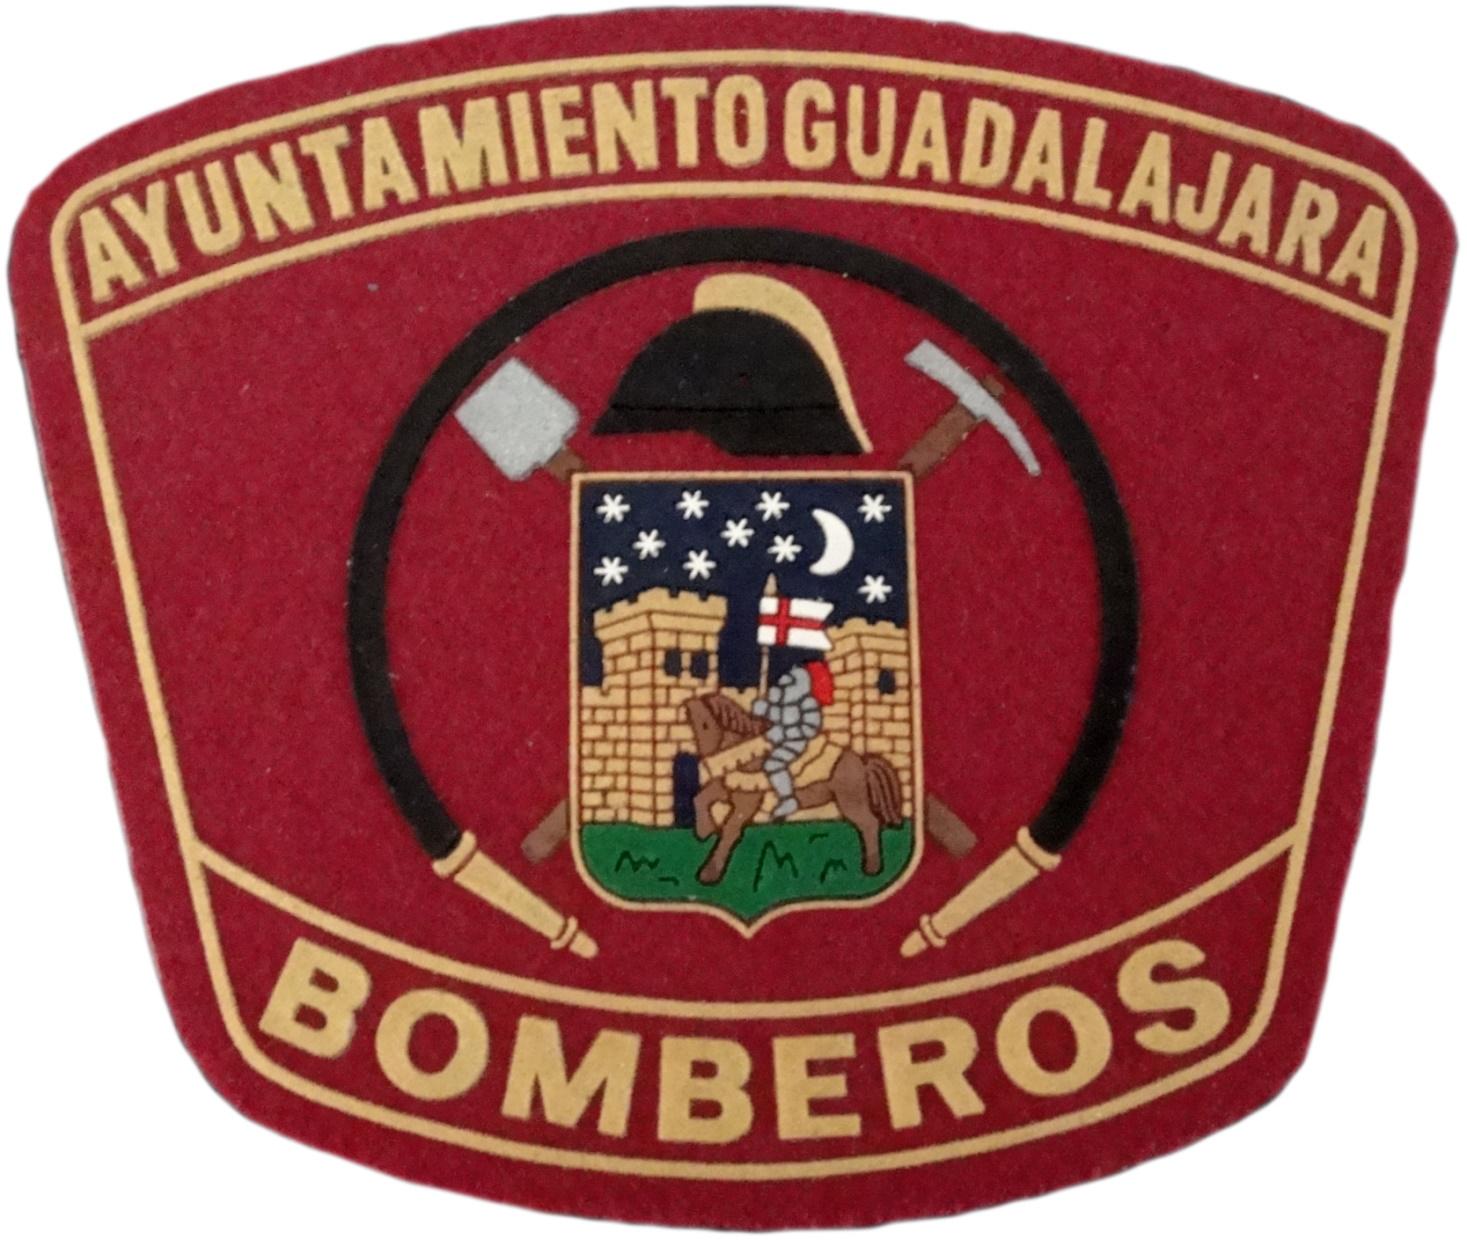 Bomberos Ayuntamiento de Guadalajara Servicio contra incendios y salvamento parche insignia emblema distintivo